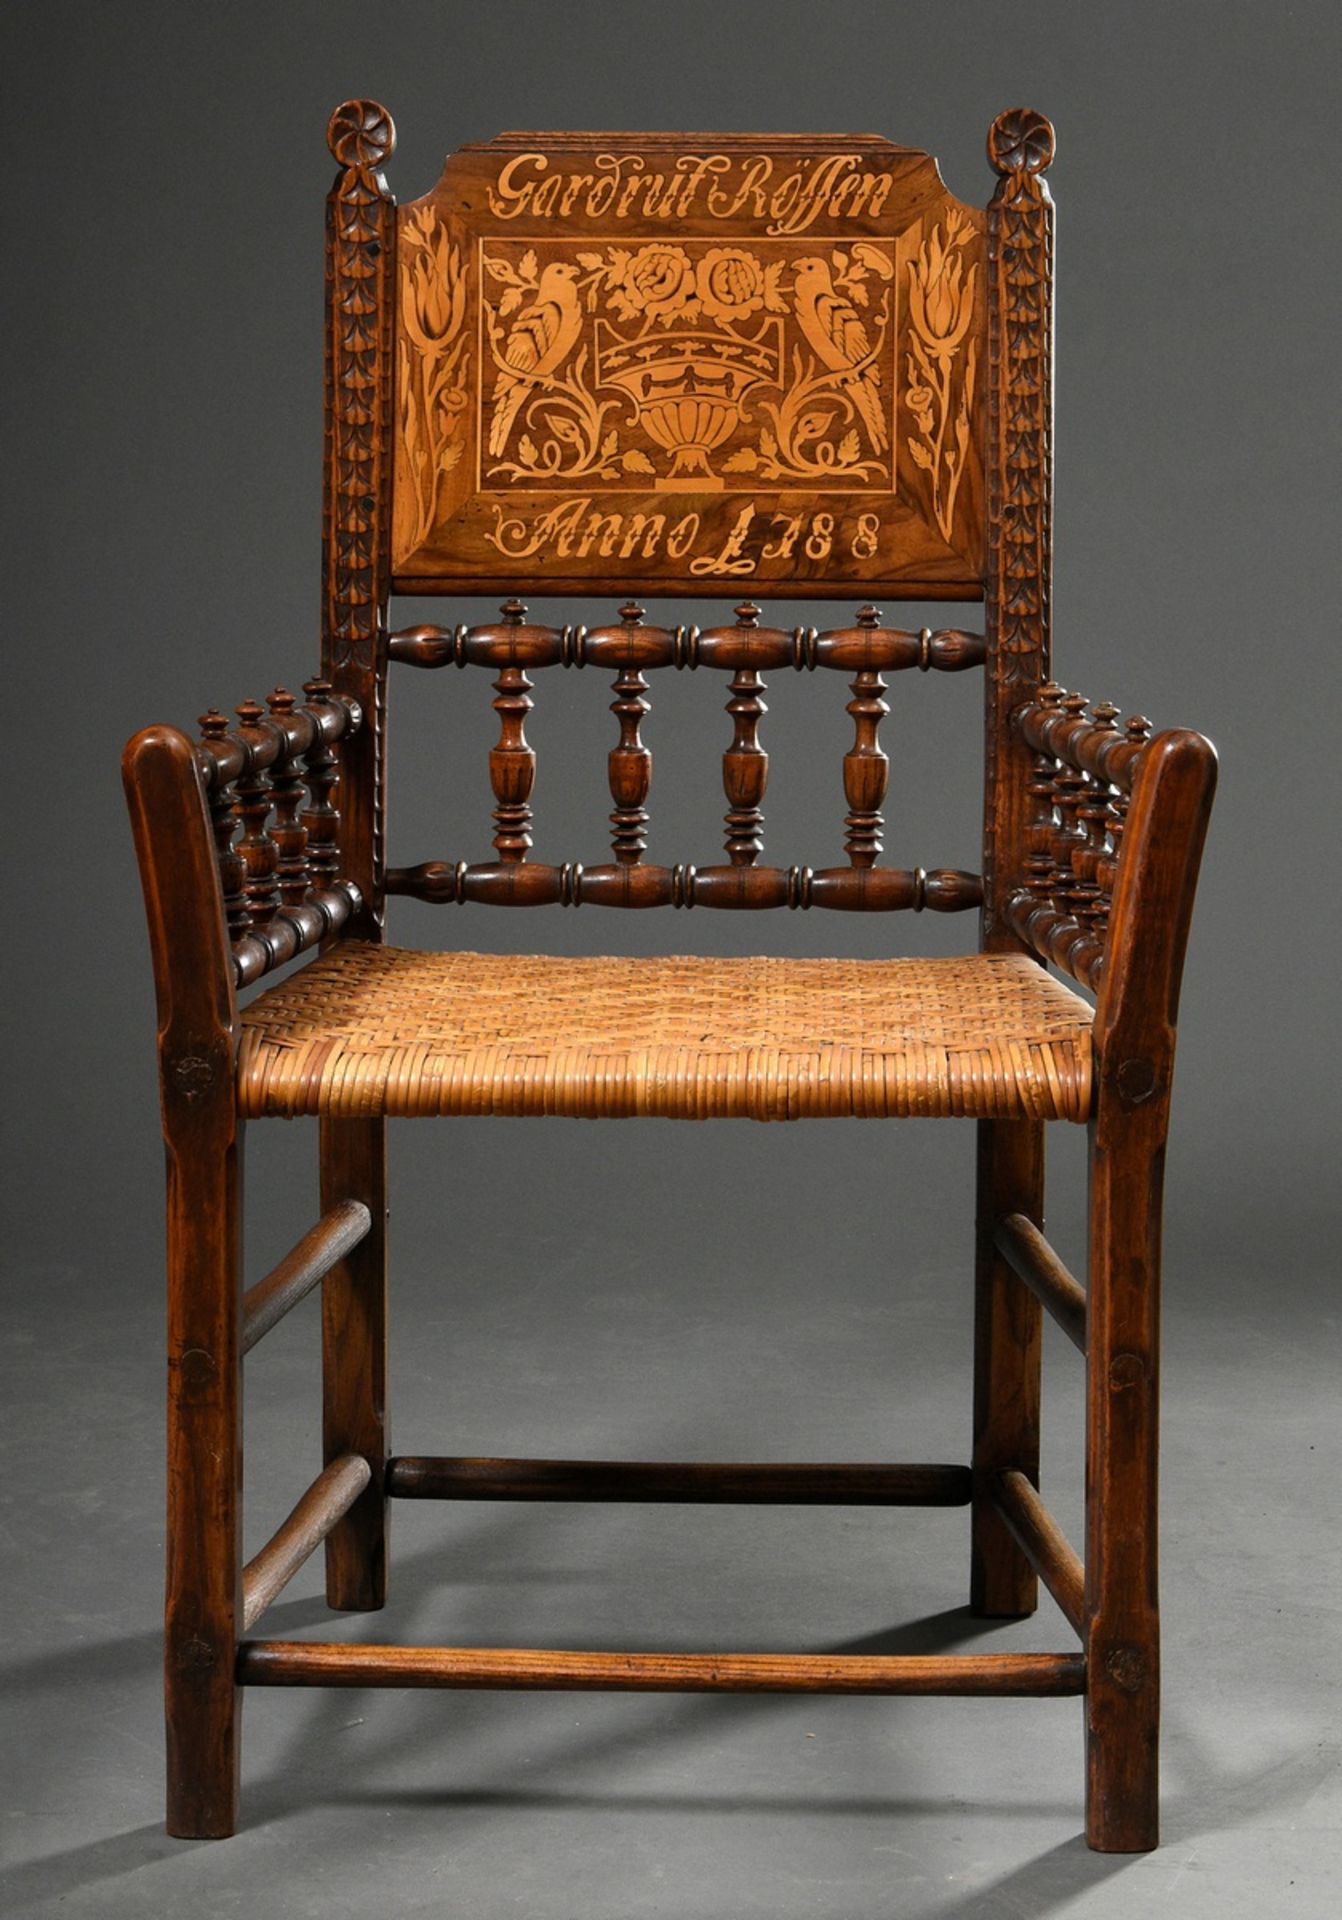 Vierländer wedding chair with rich inlay "Gardrut Rössen Anno 1788" and turned frame, h. 42,5/92cm - Image 2 of 5